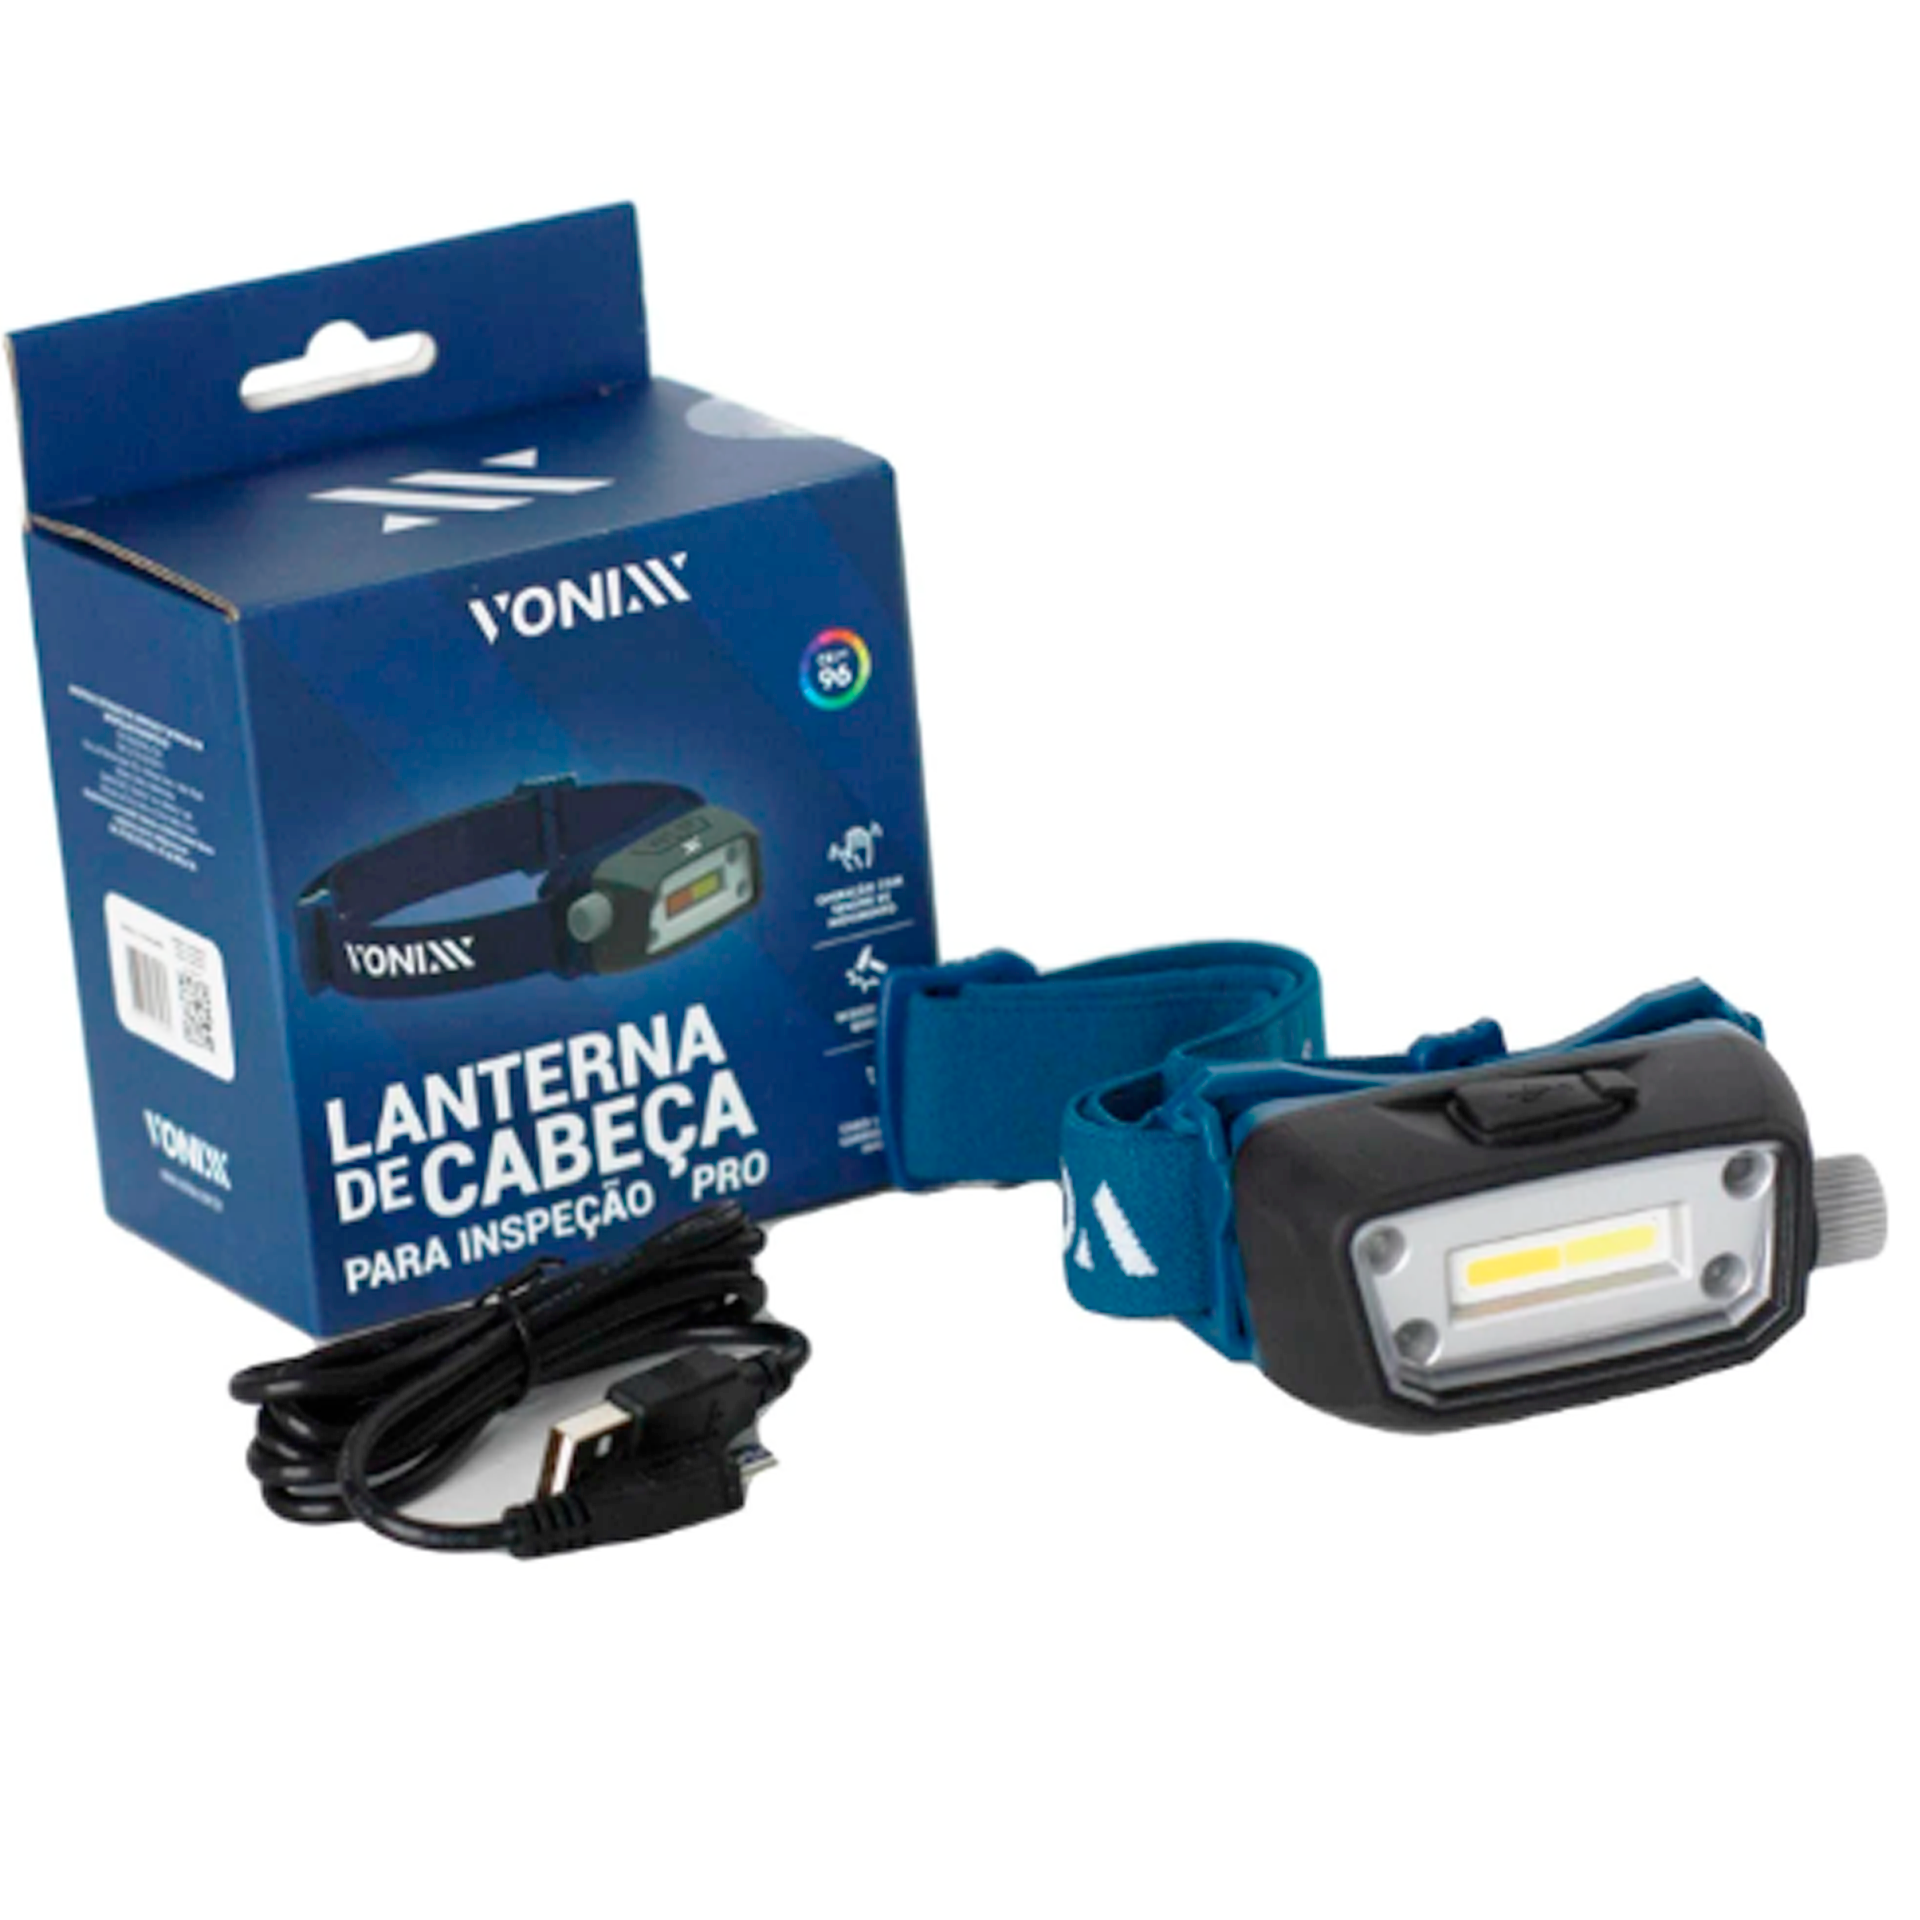 Lanterna de Cabeça Para Inspeção Pro 350lm Vonixx